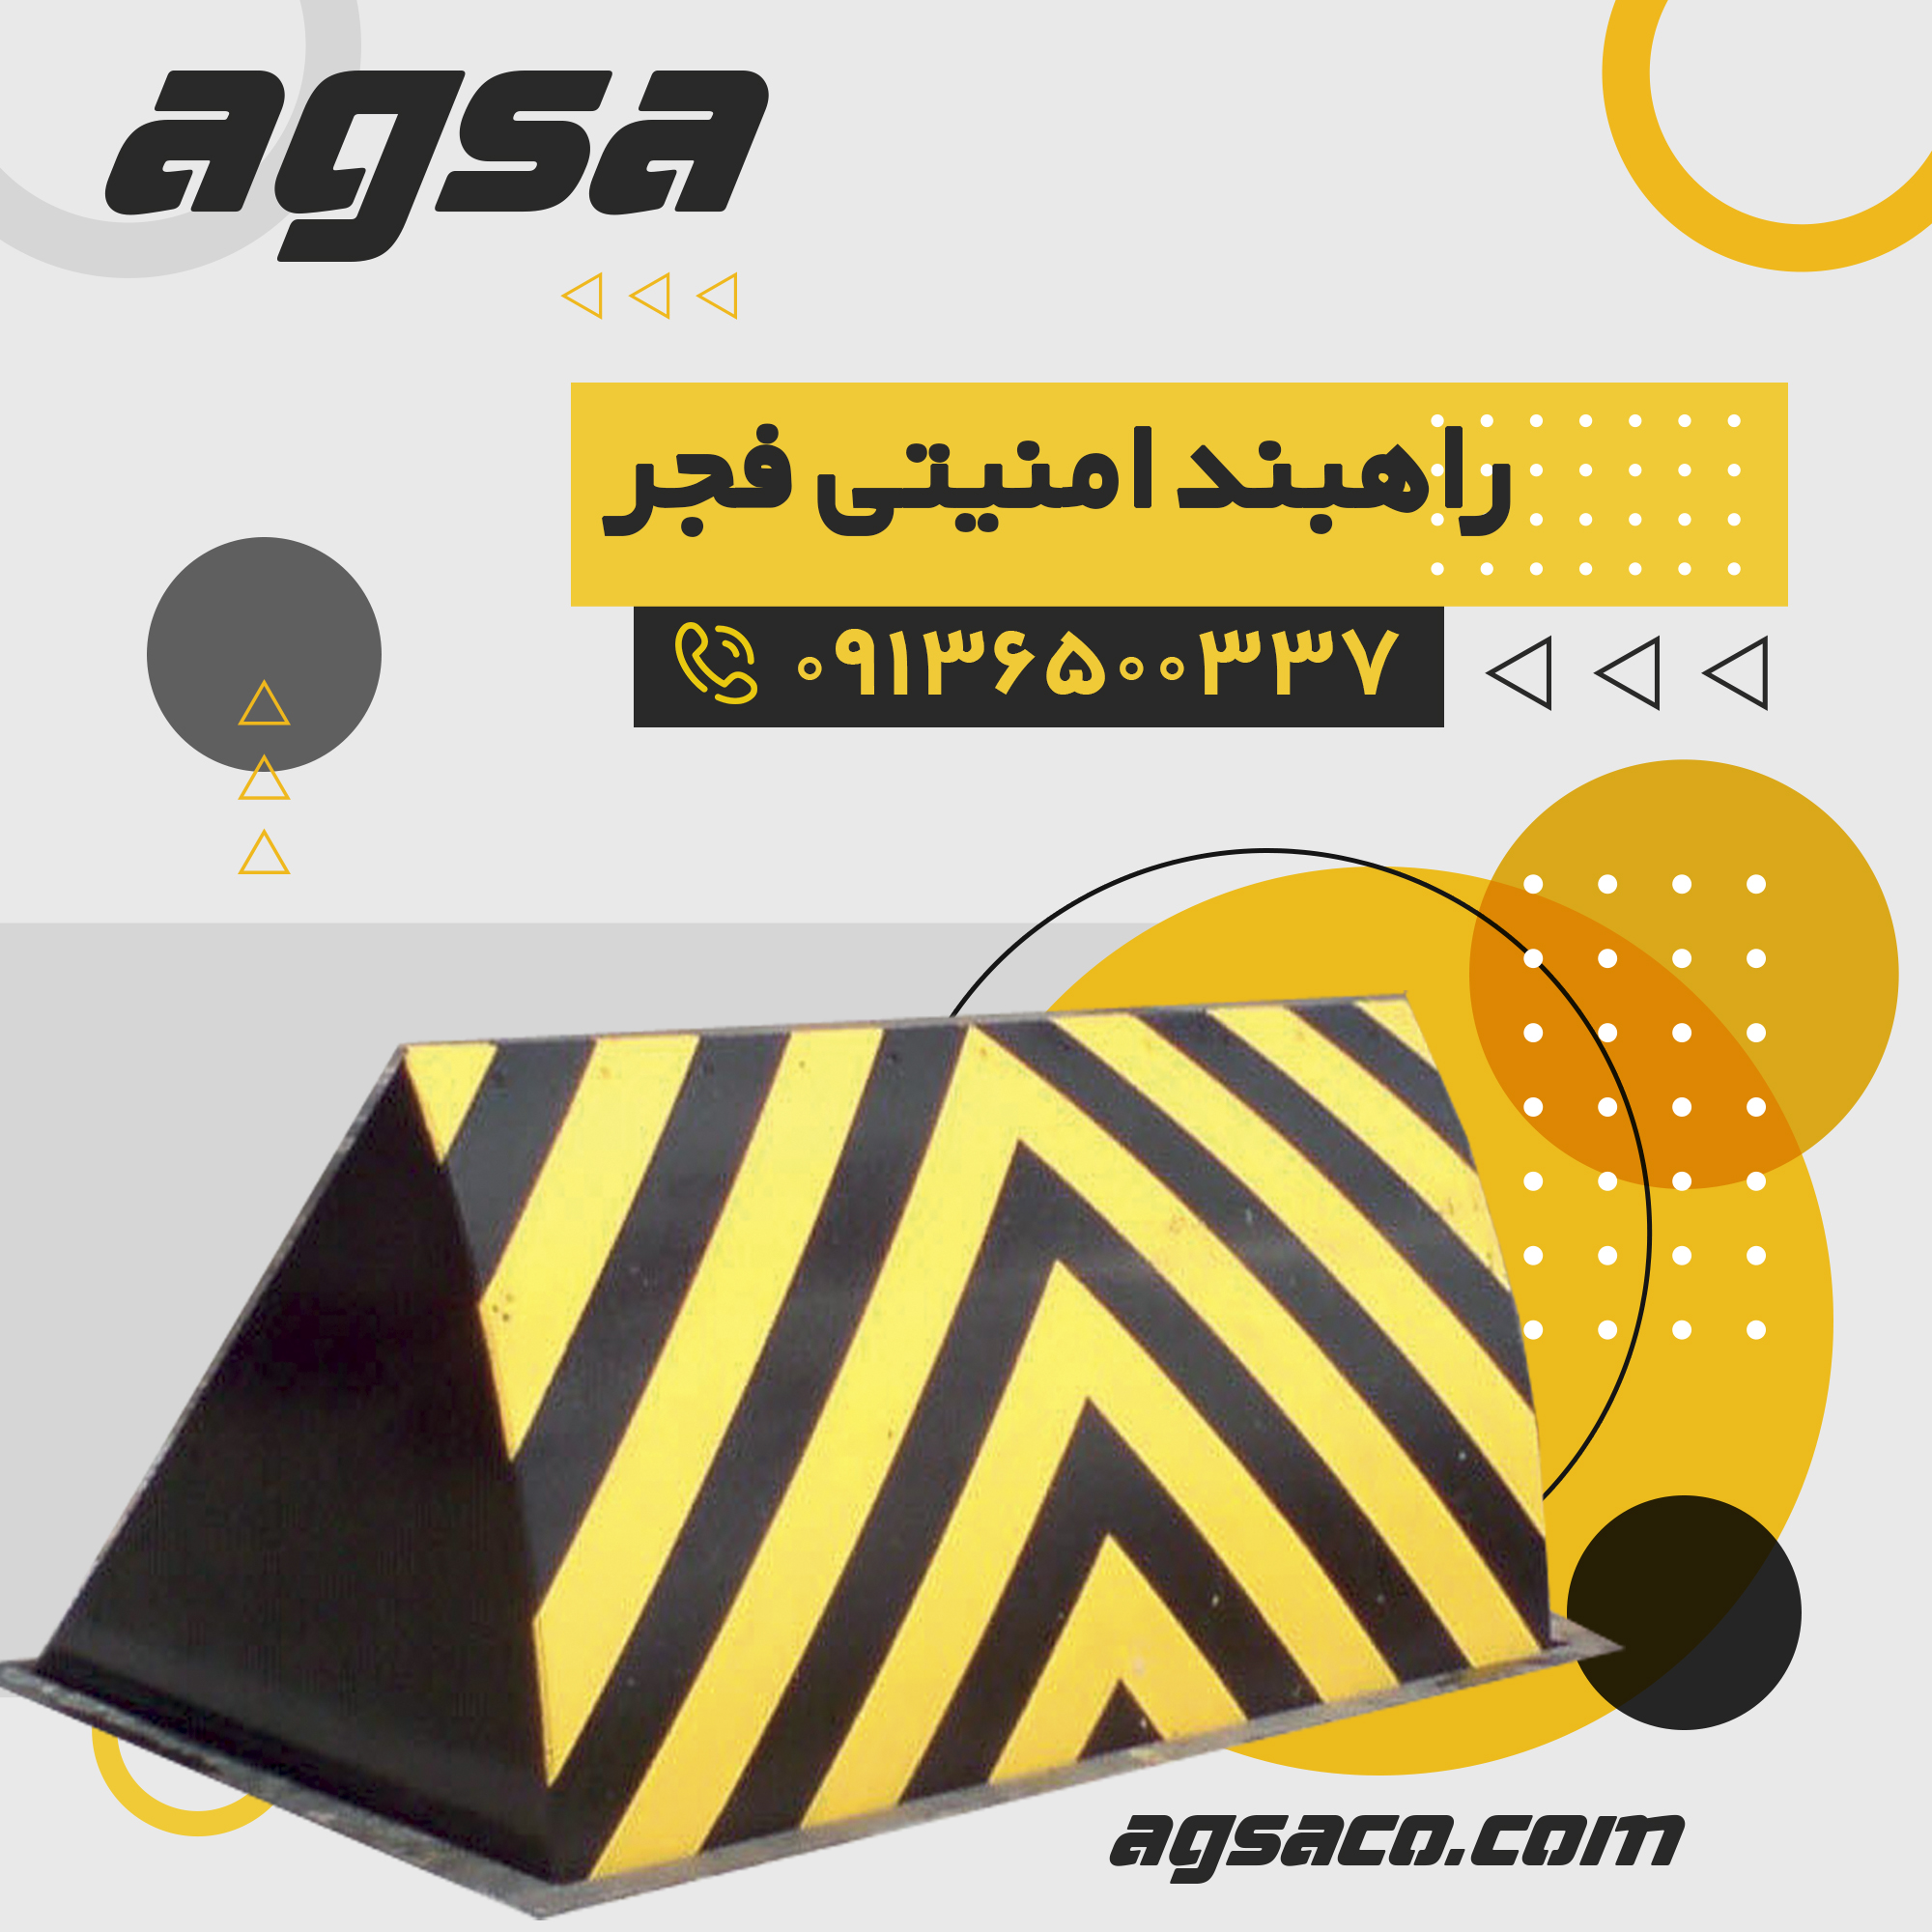 فروش راهبندهای امنیتی در اصفهان 09136500337